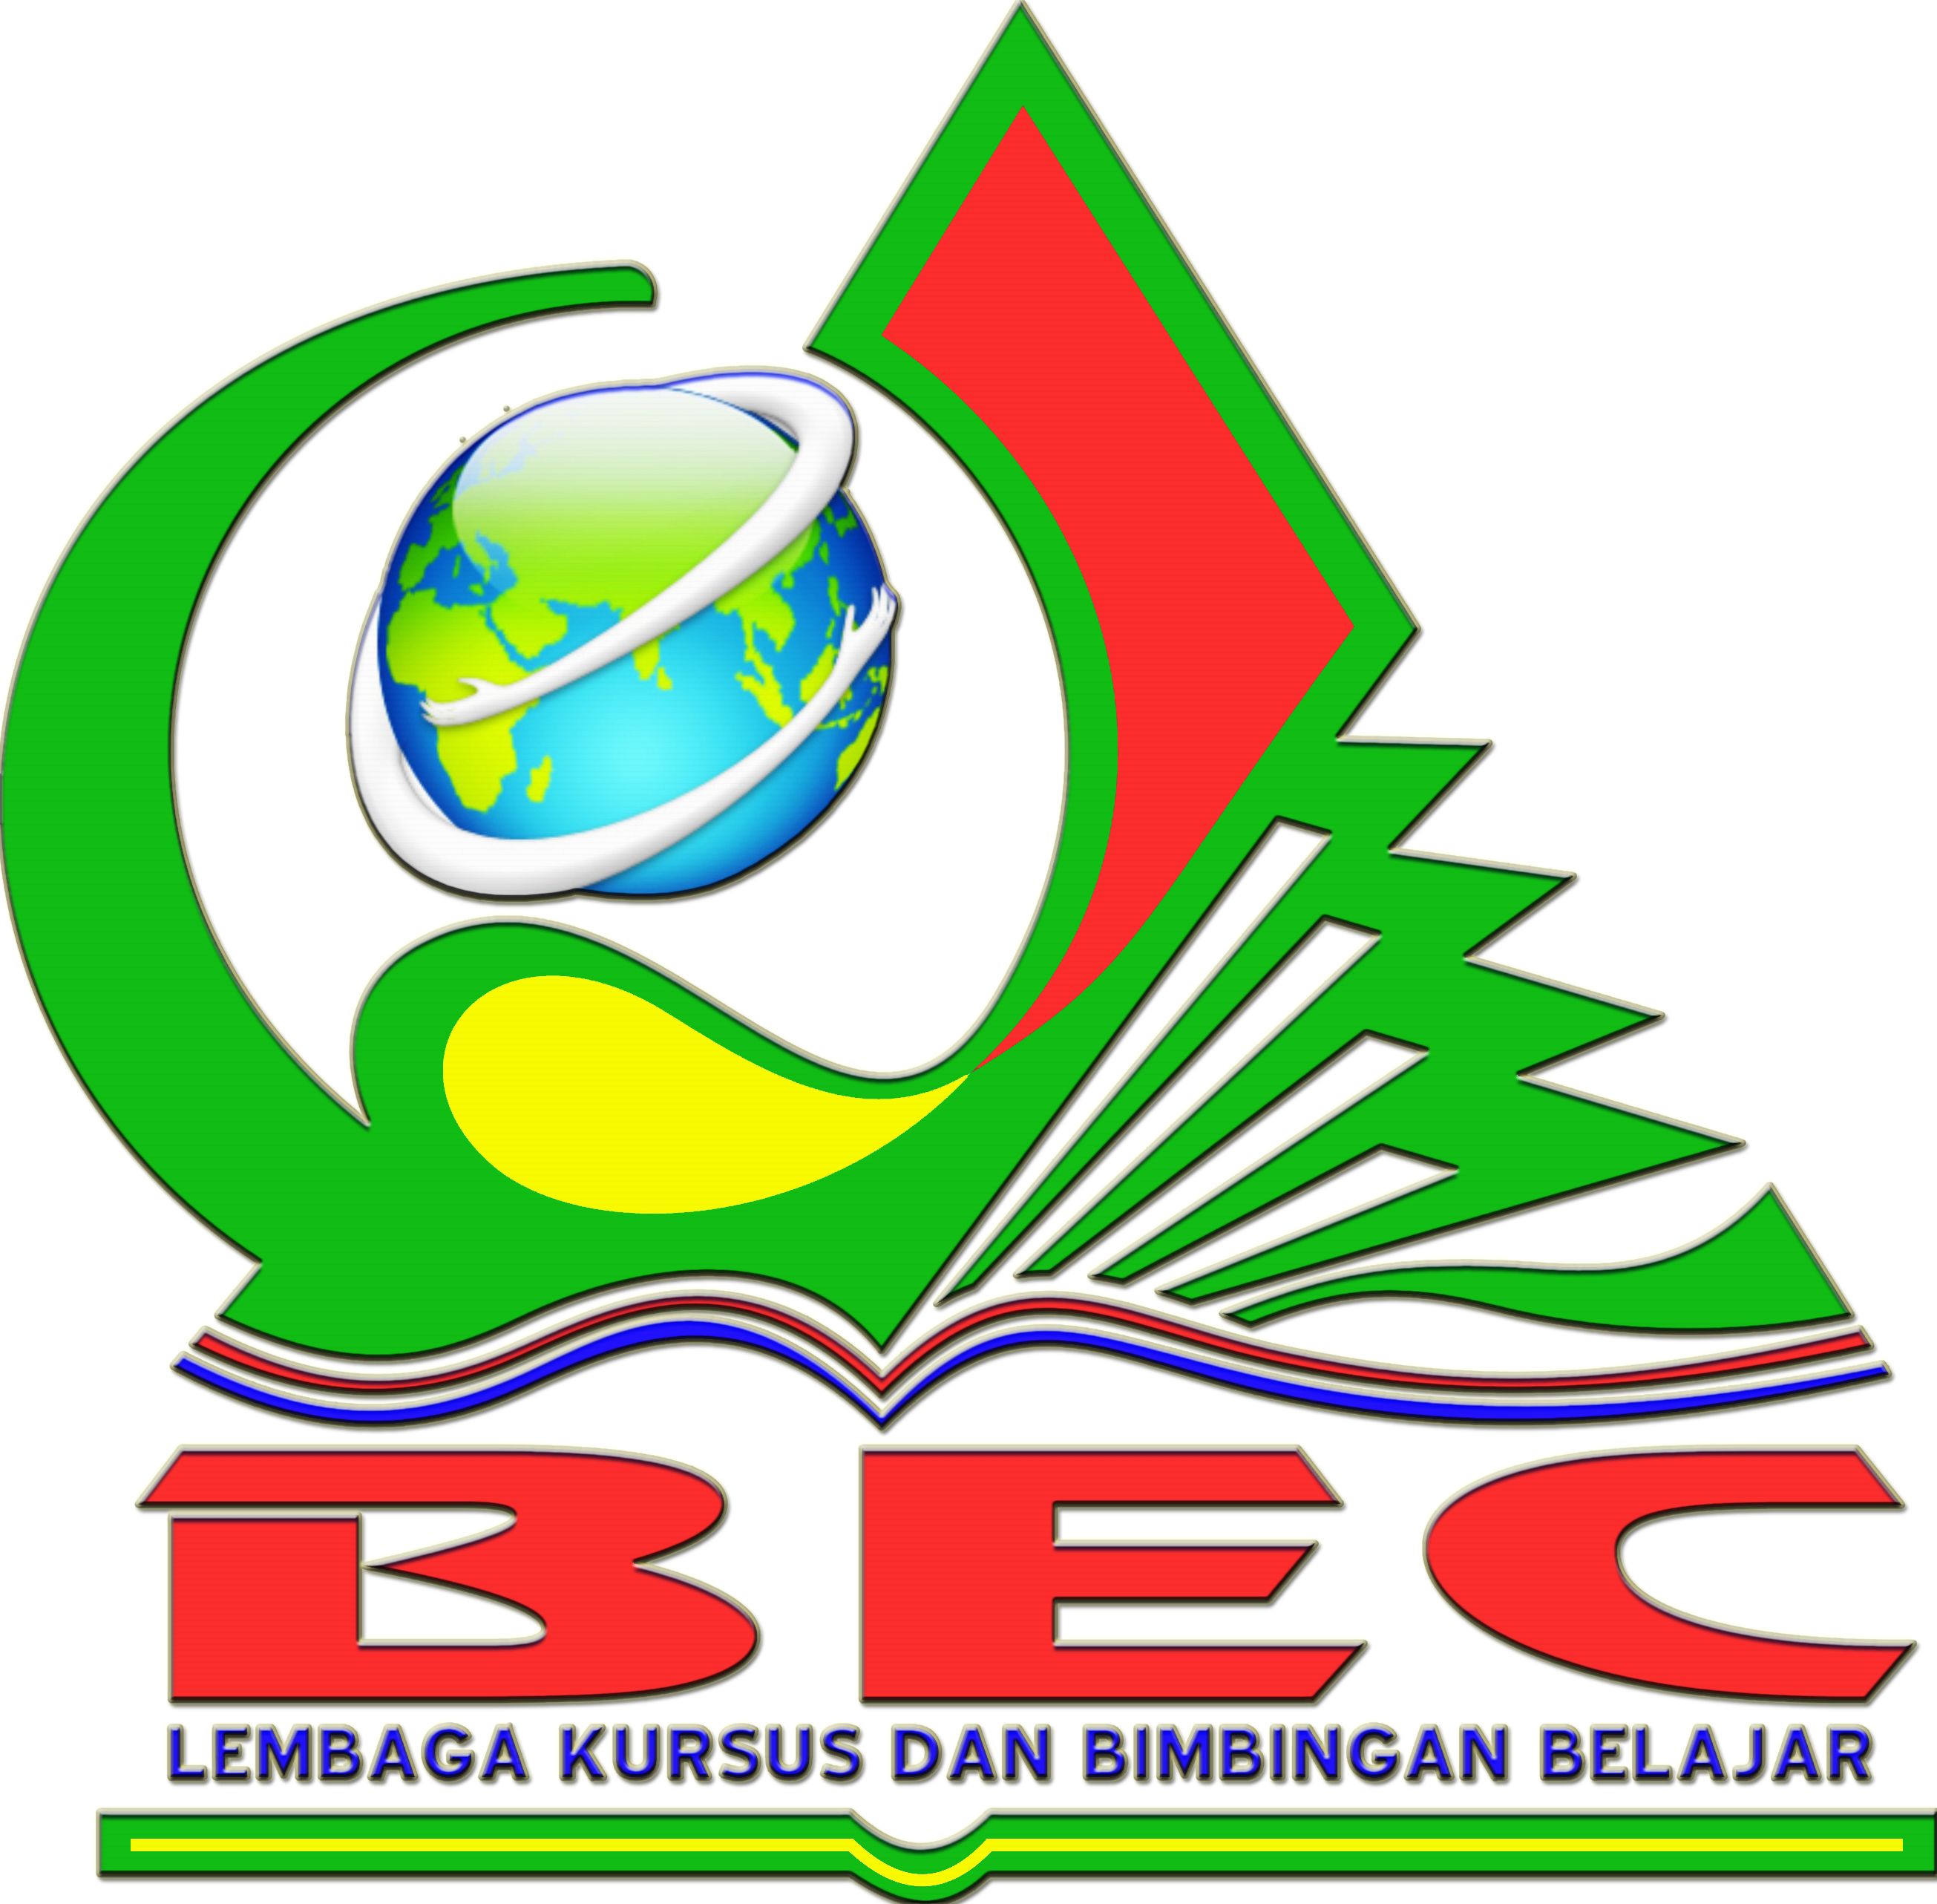 LEMBAGA KURSUS DAN BIMBINGAN BELAJAR BEC SUMPIUH 2018 09 16 00 22 01 Logo BEC 3D